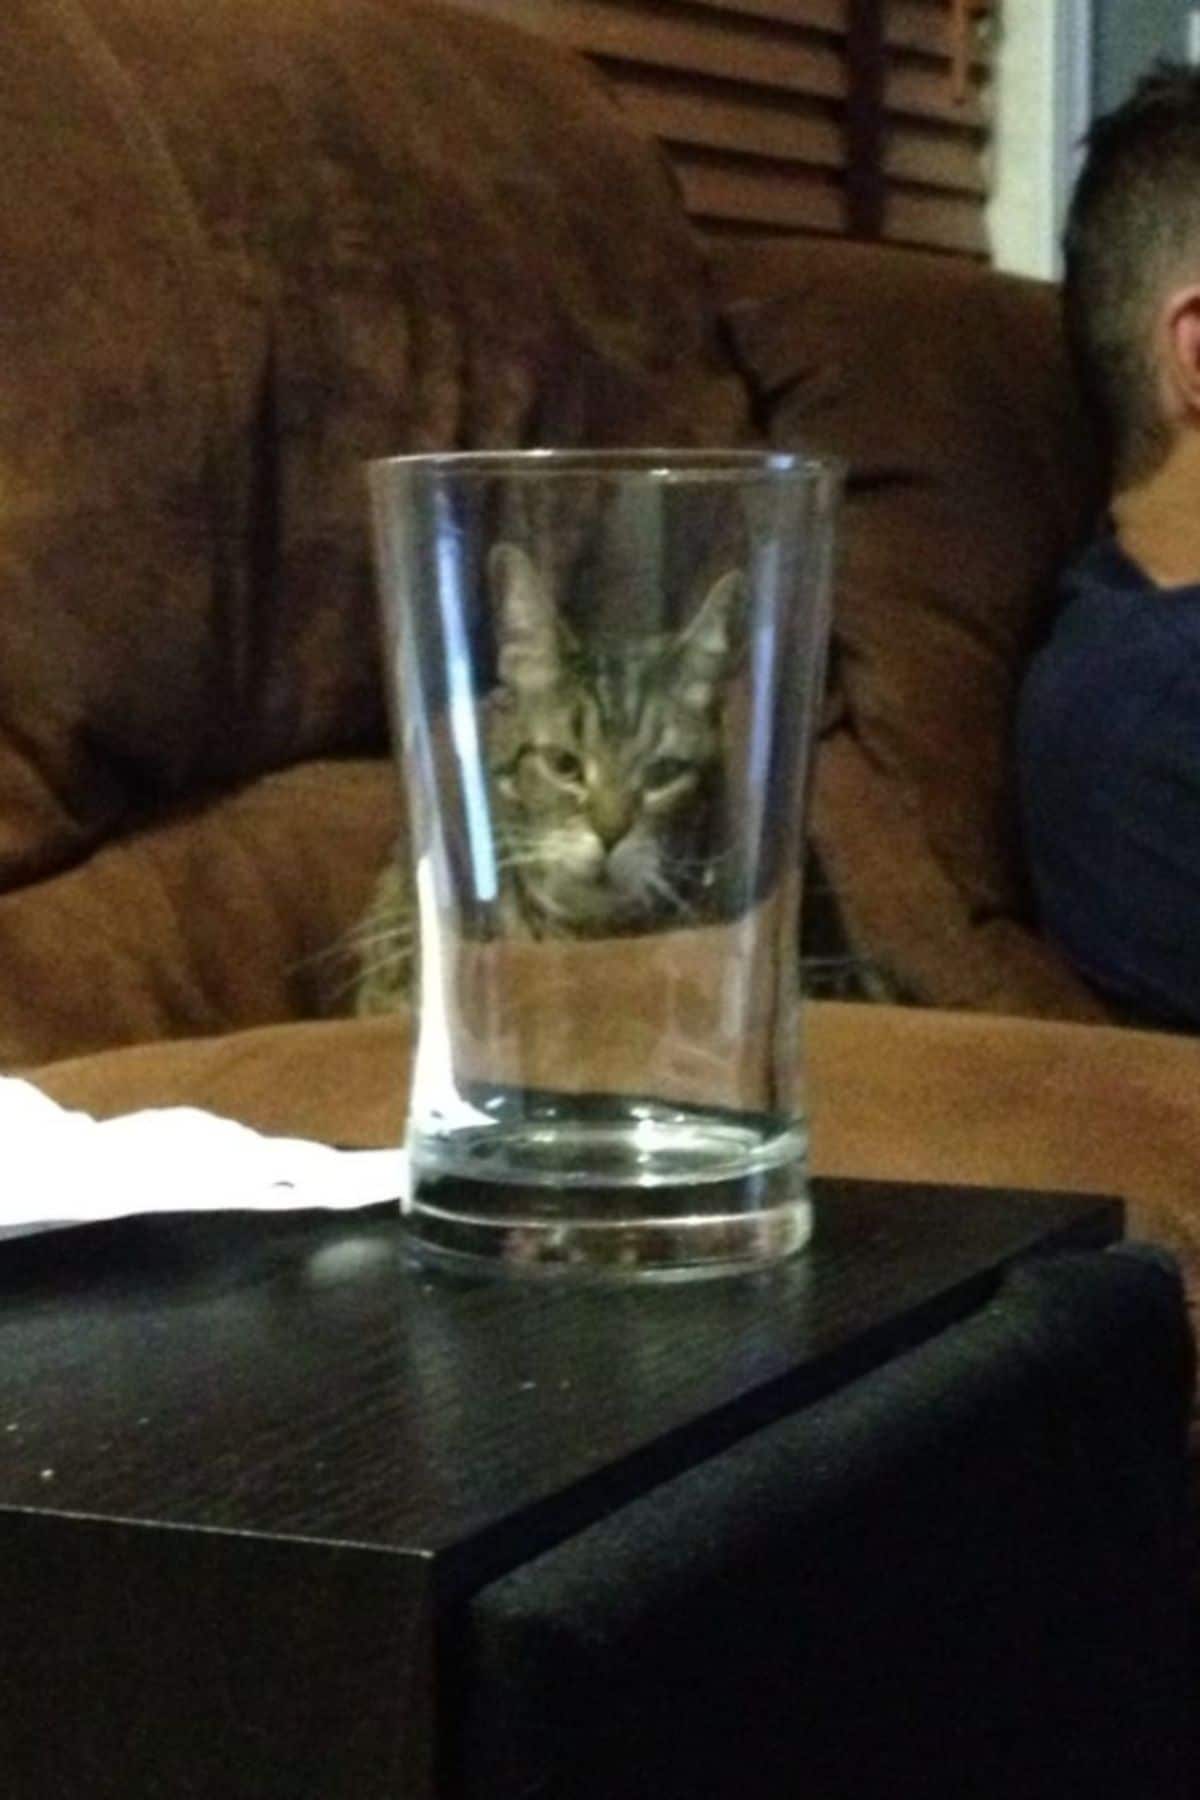 grey tabby cat seen through a glass